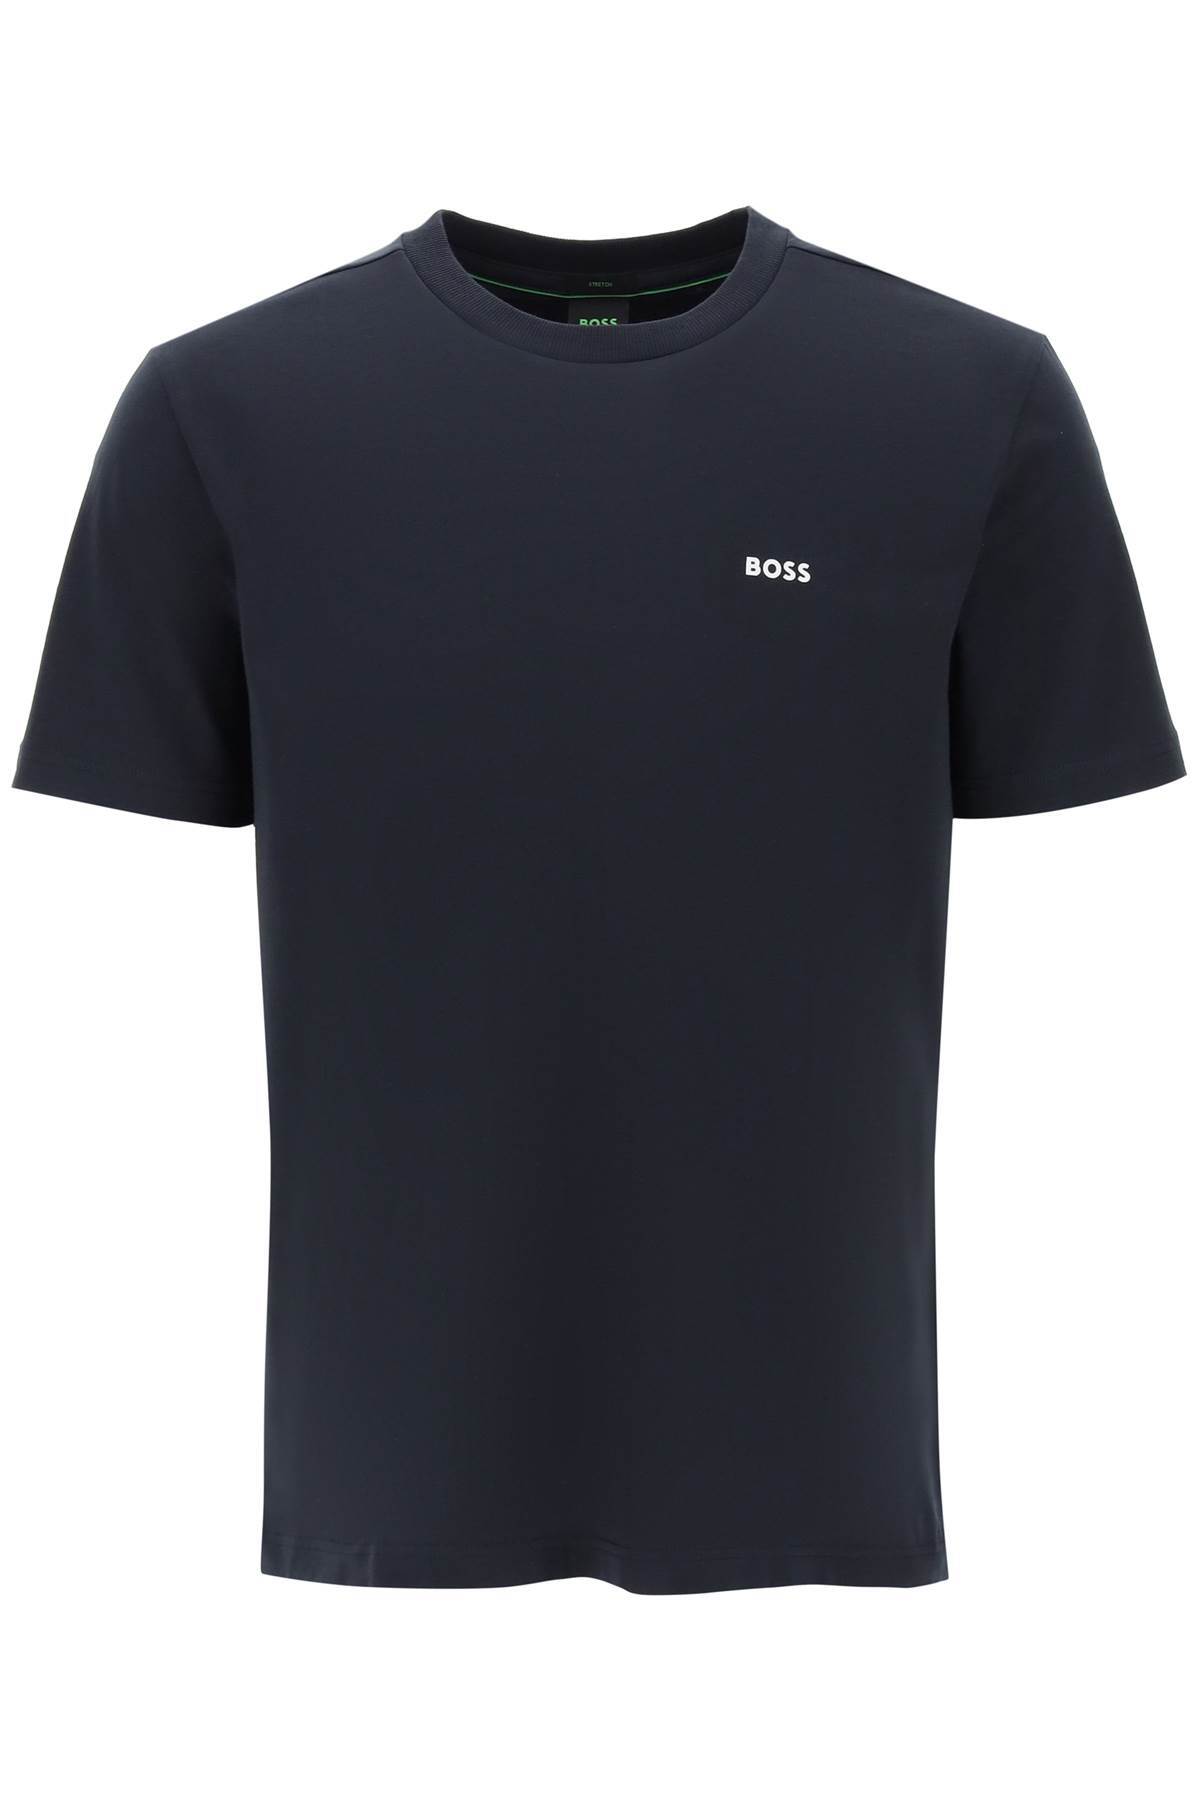 楽天市場】HUGO BOSS ヒューゴボス DARK BLUE (Blue) Tシャツ メンズ